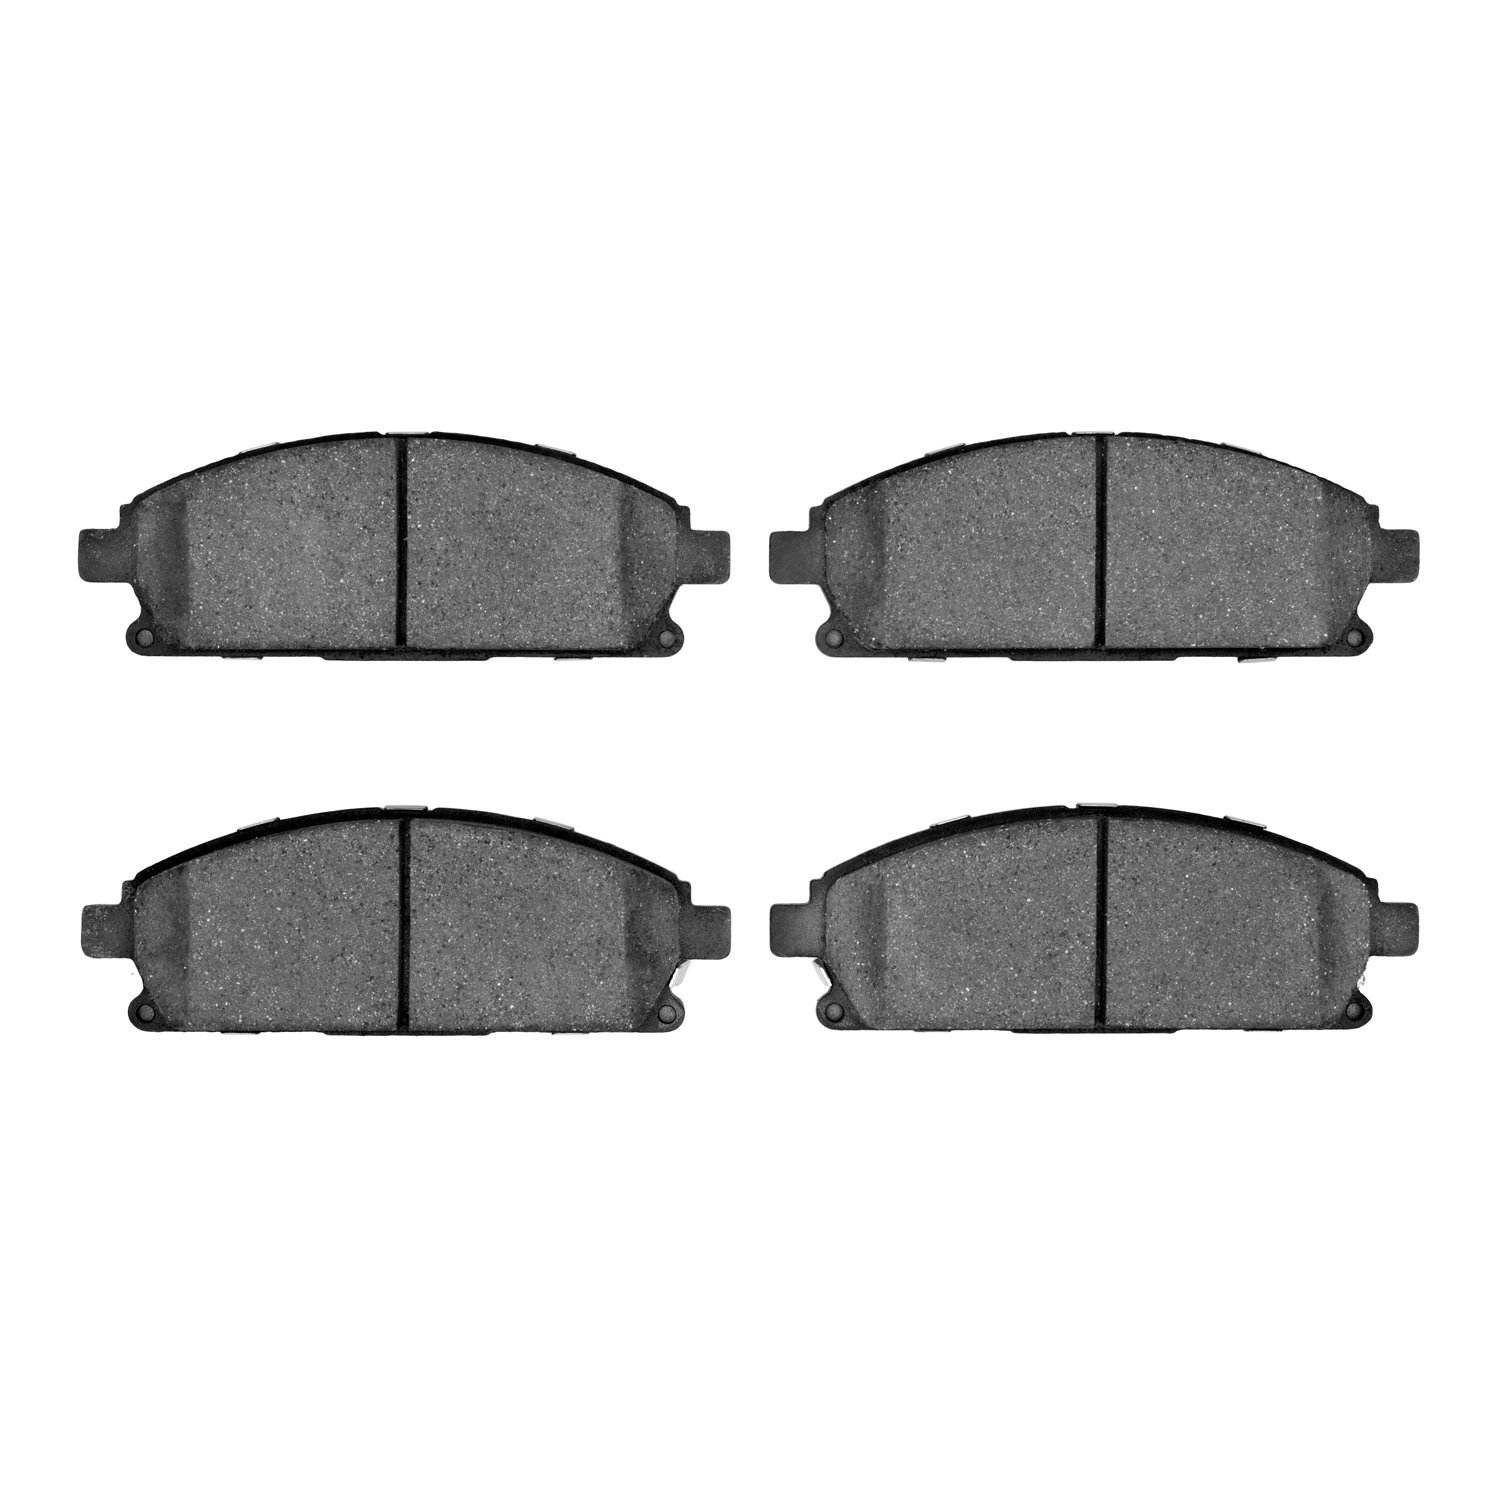 Ceramic Brake Pads, 1996-2017 Fits Multiple Makes/Models, Position: Front